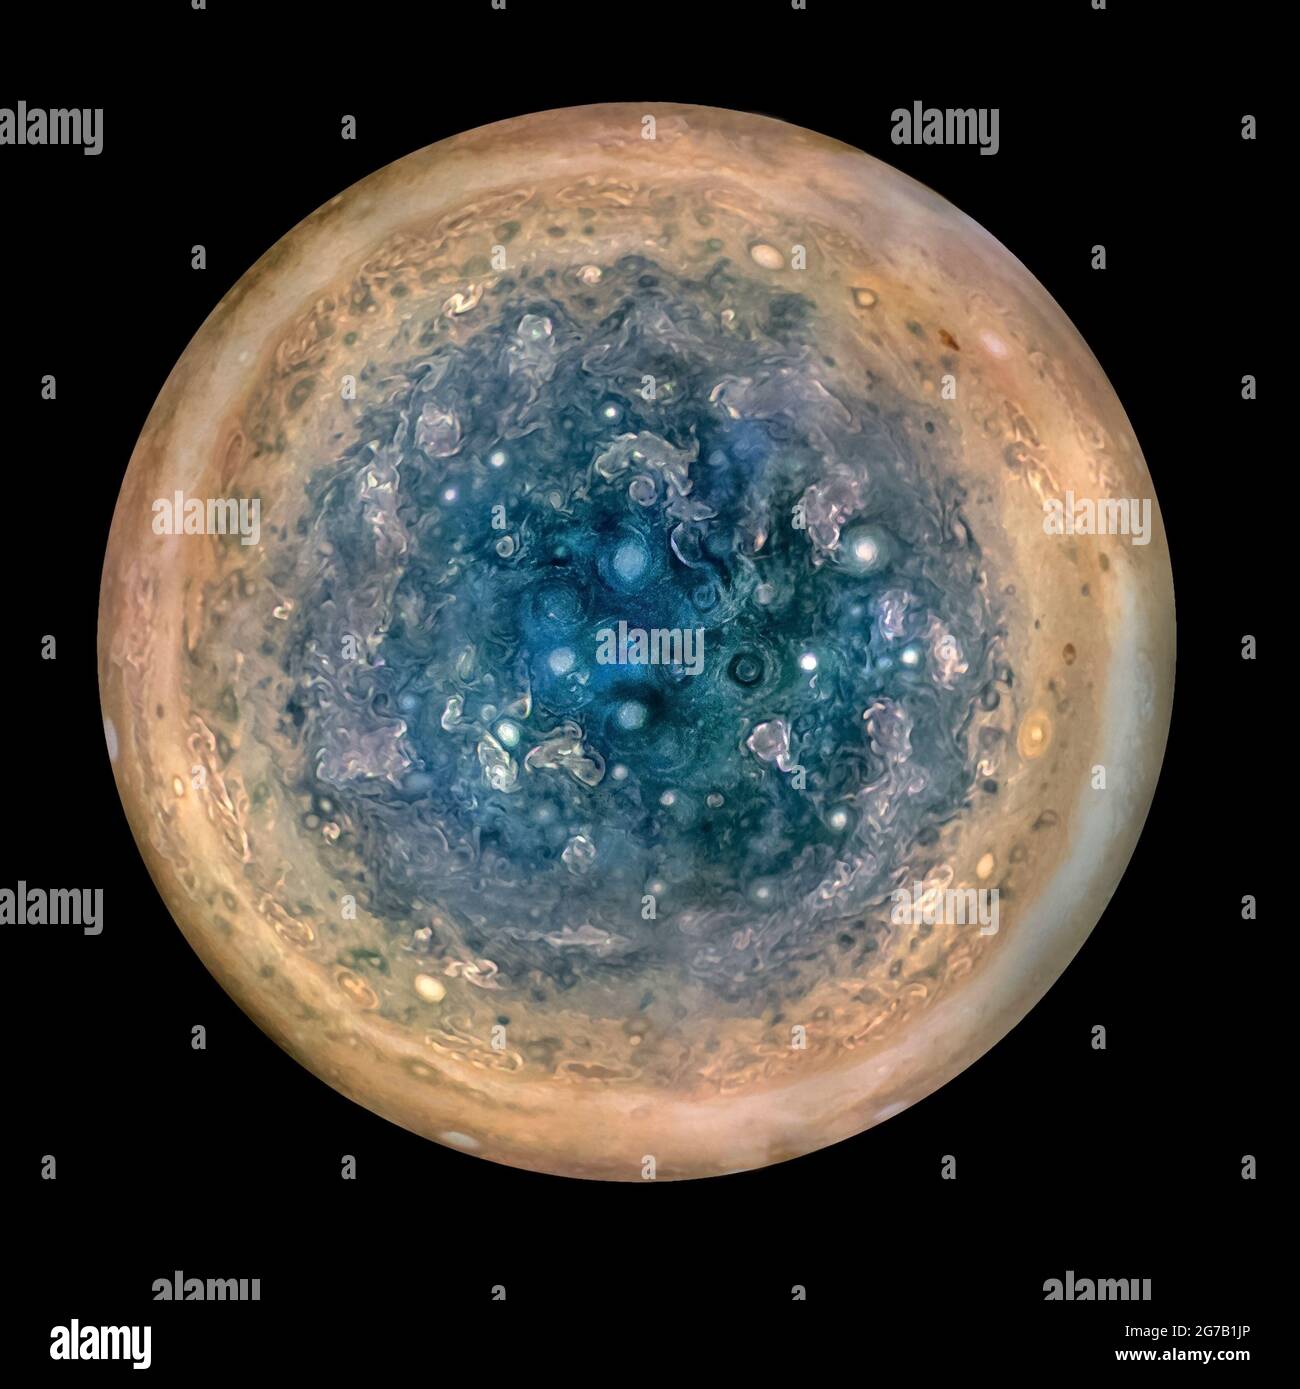 Une visualisation du pôle sud de Jupiter, comme le montre l'engin spatial Juno de la NASA. Prise à partir d'une altitude de 32000 miles (52000km). Les caractéristiques ovales sont des cyclones, jusqu'à 600 miles (1000km) de diamètre. Plusieurs images prises avec l'instrument JunoCam sur trois orbites distinctes ont été combinées pour afficher toutes les zones en lumière du jour, en couleurs améliorées et en projection stéréographique. Juno lancé le 5 5 août 5 2011, entrant dans l'orbite de Jupiter le 4 juillet 2016. Ê il s'agit d'une version unique, optimisée et améliorée d'une image/d'un crédit de la NASA : la NASA Banque D'Images